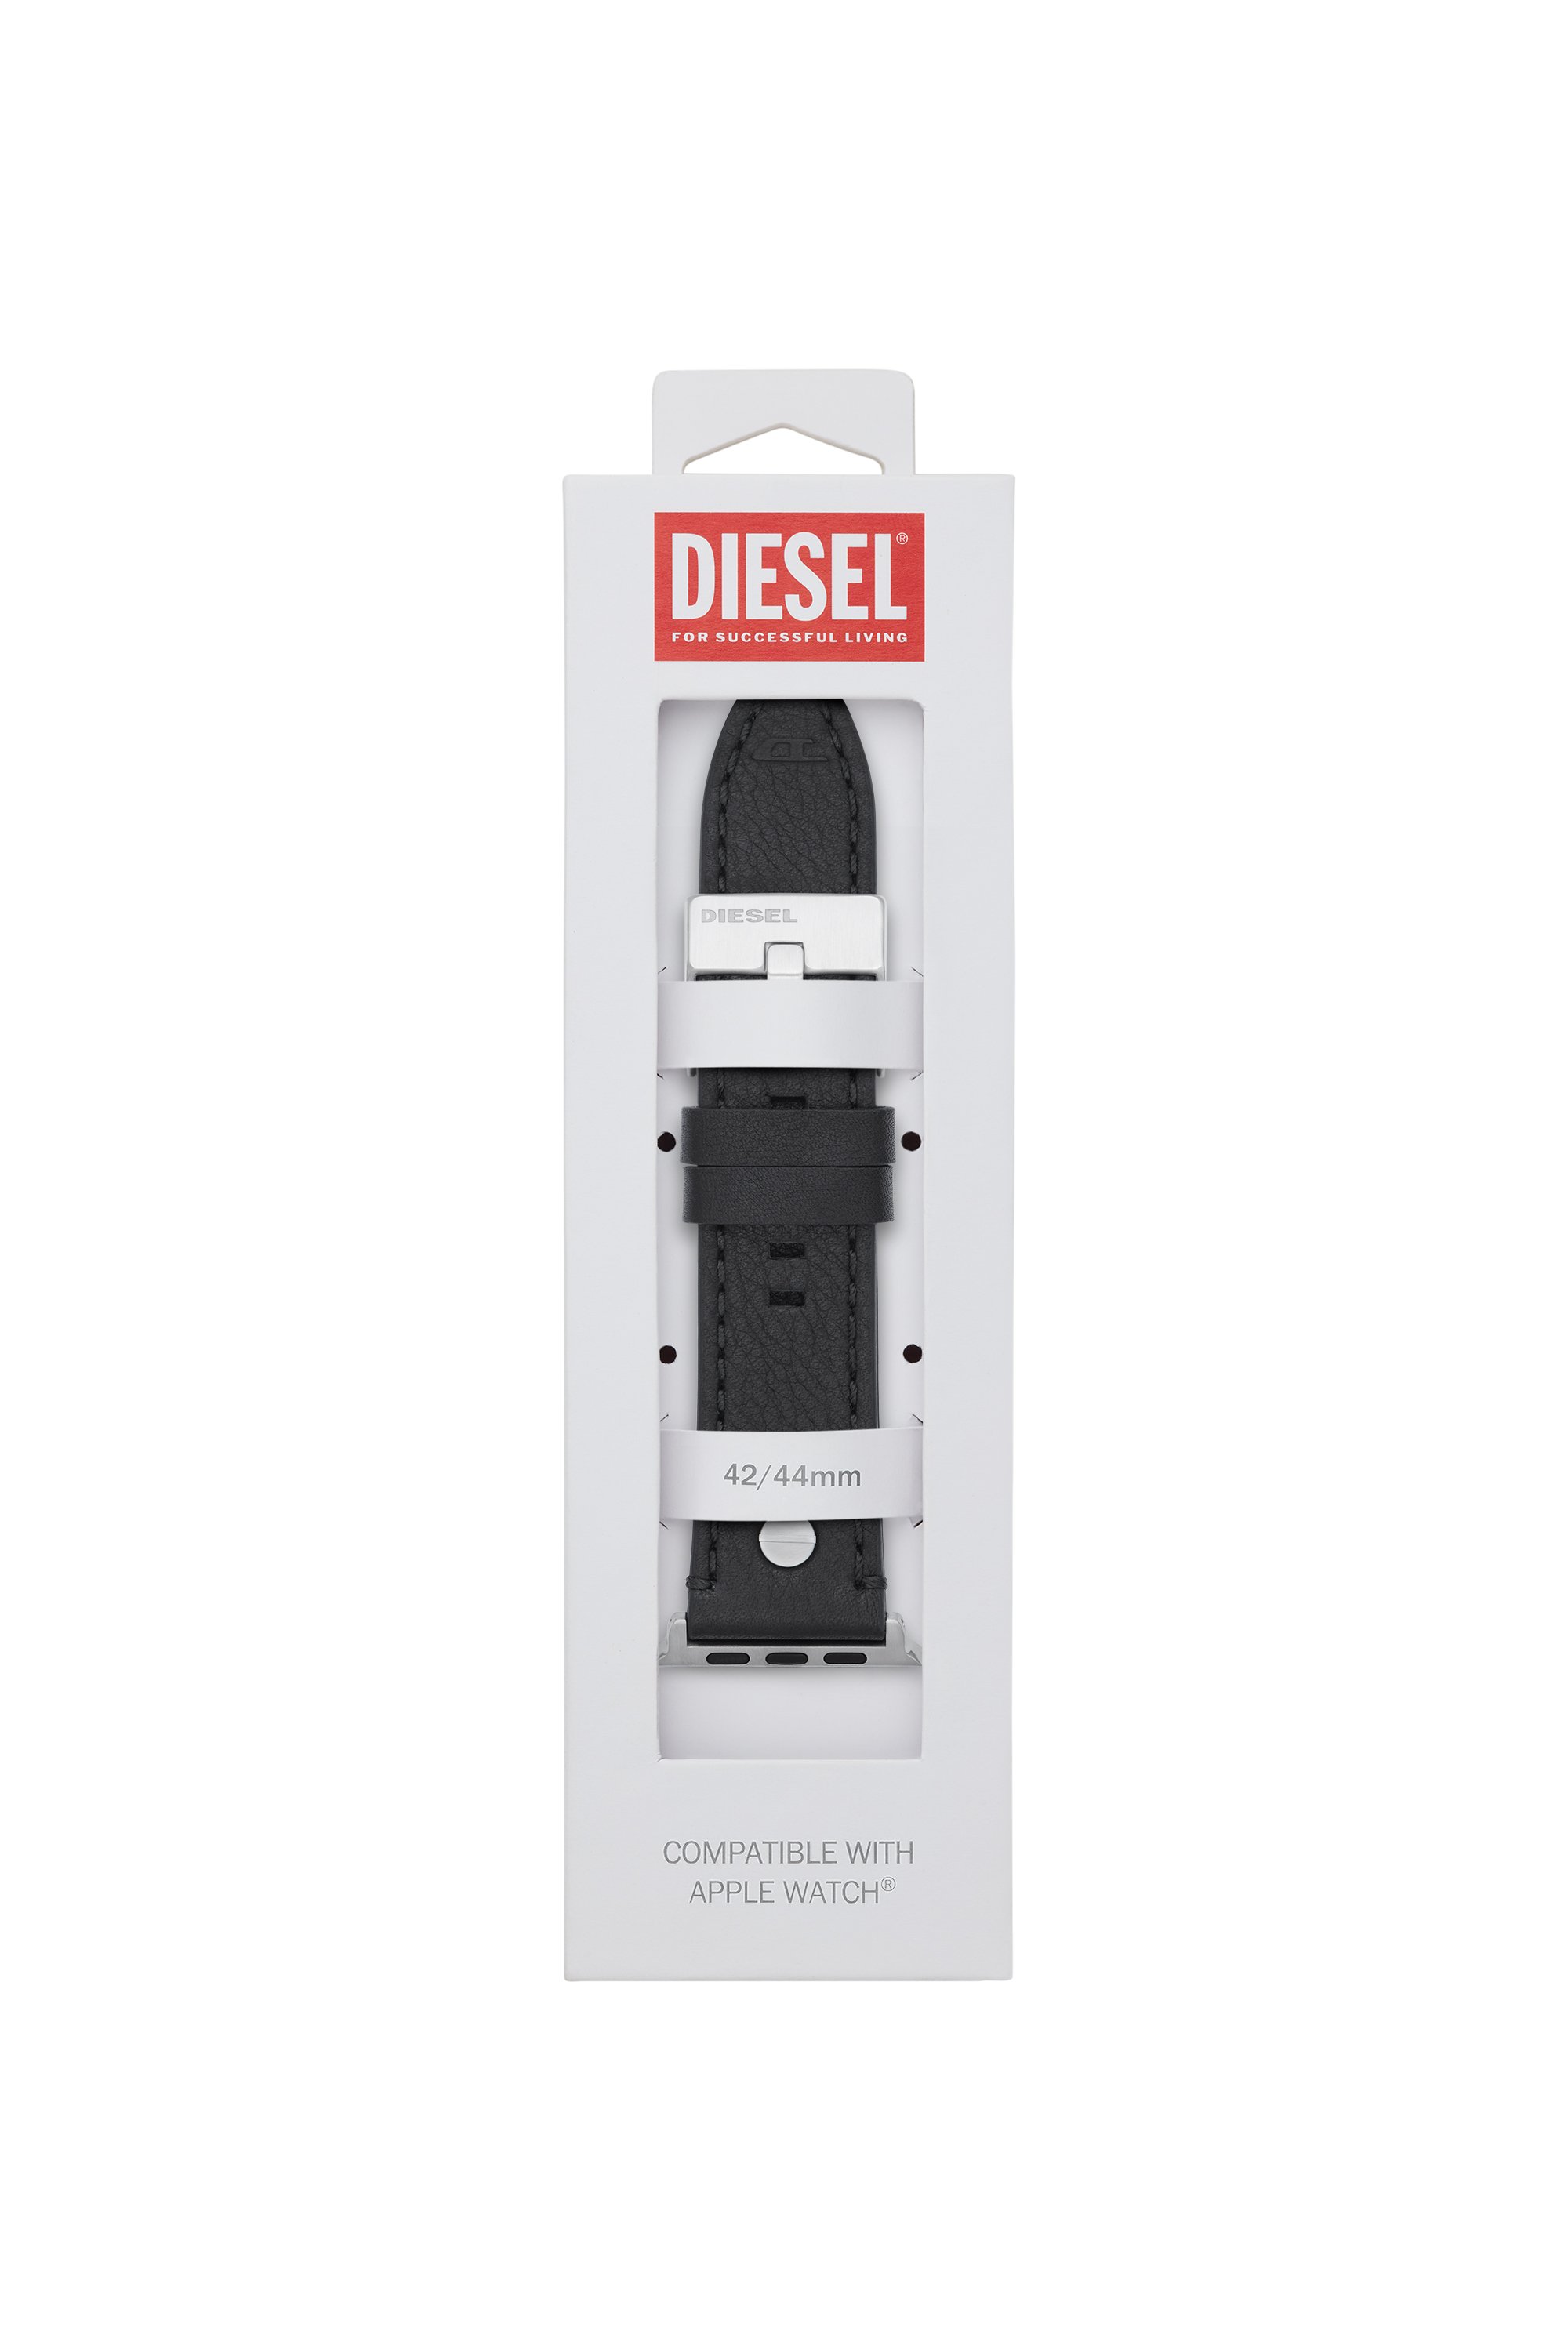 Diesel - DSS001, Nero - Image 2